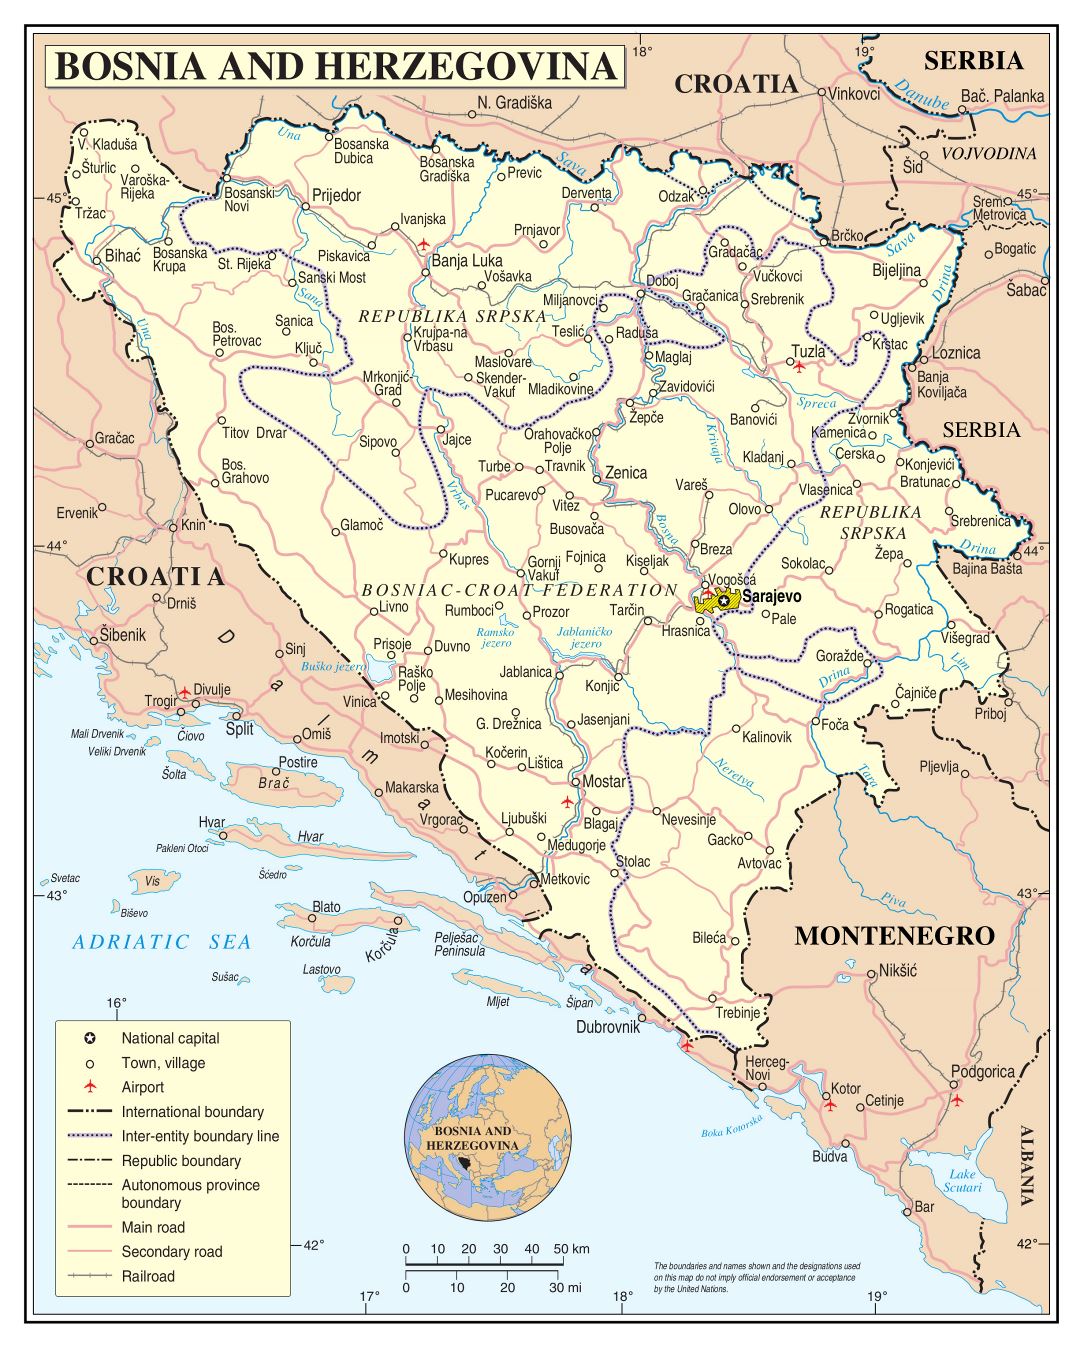 Mapa político y administrativo a gran escala de Bosnia y Herzegovina con carreteras, ciudades y aeropuertos